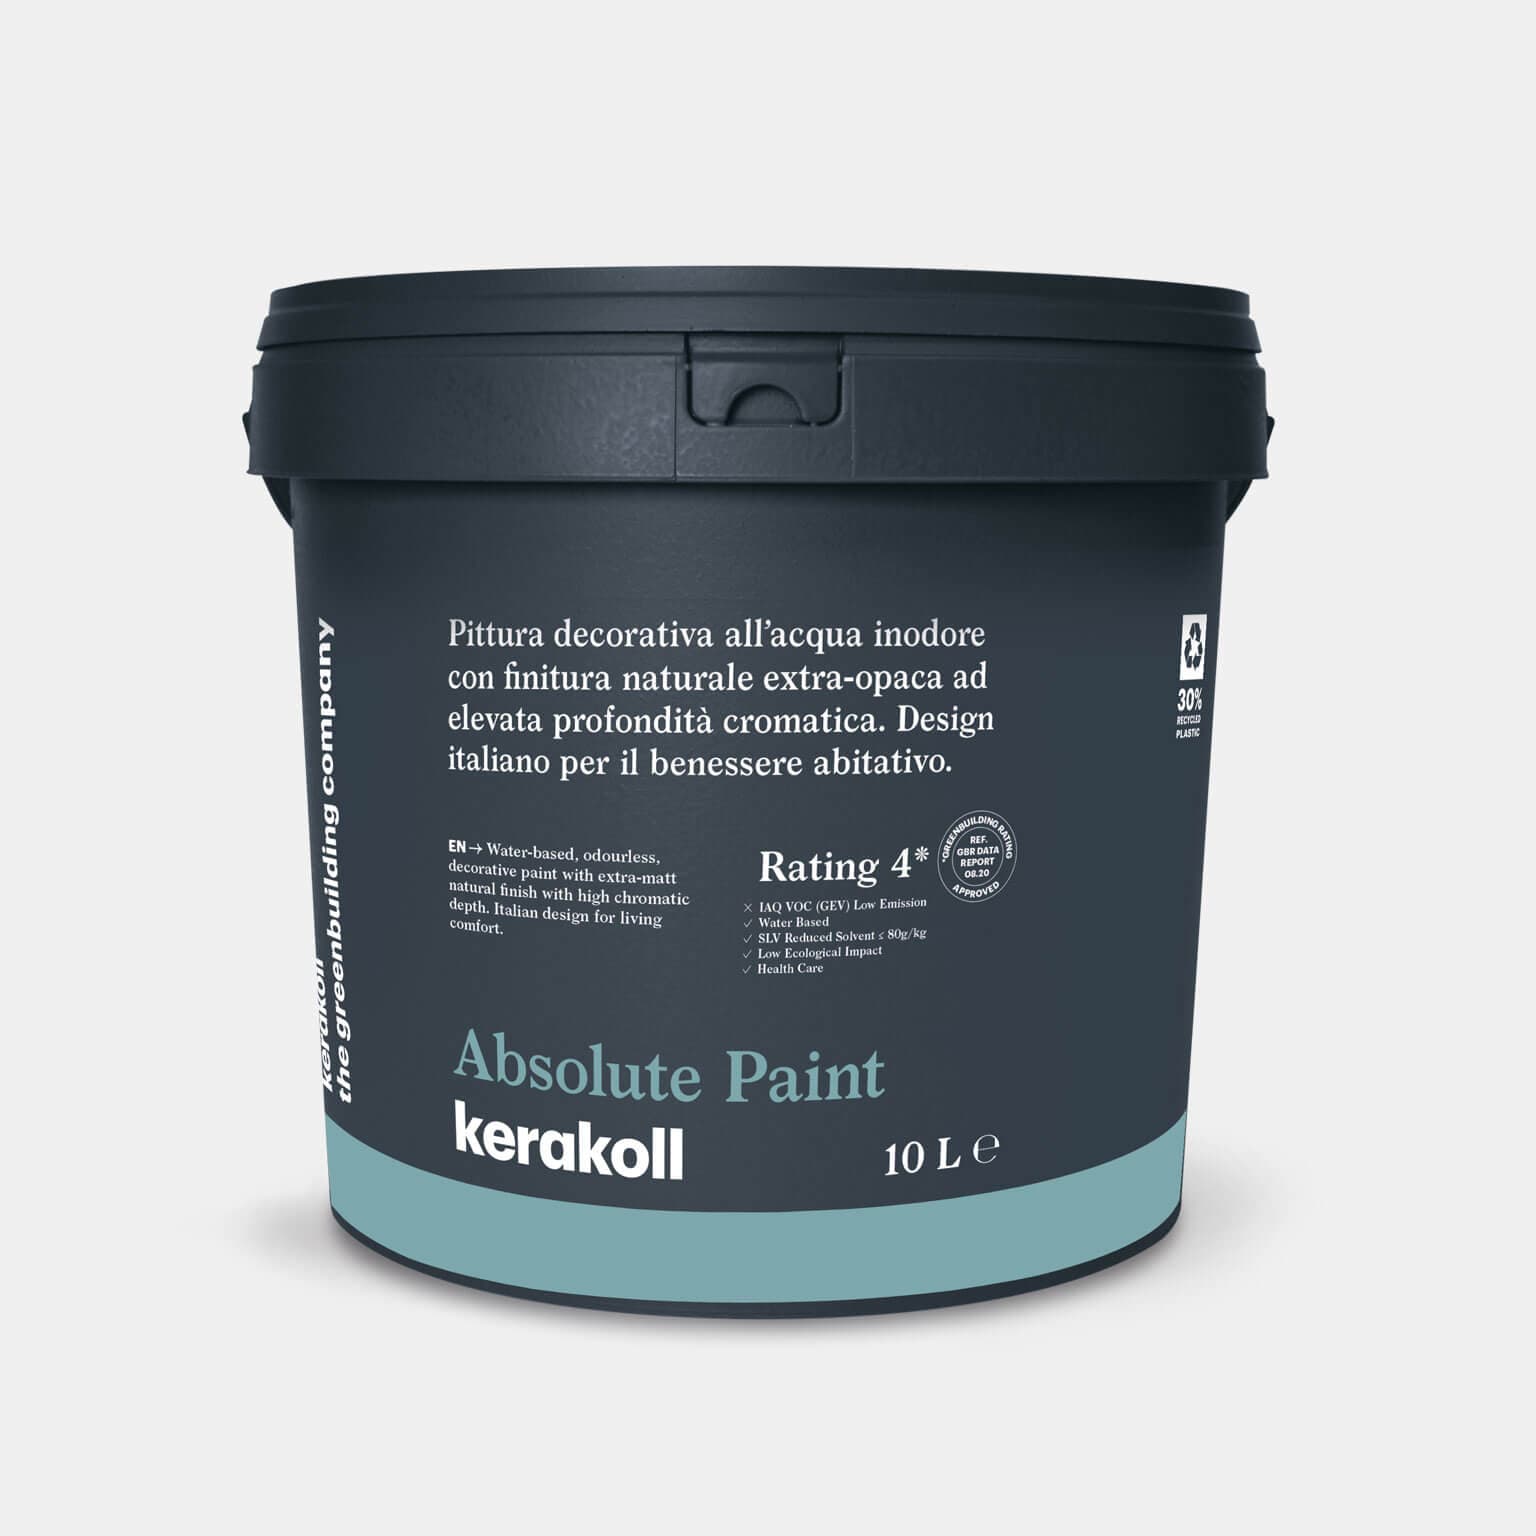 Kerakoll Absolute Paint: Vízbázisú, szagtalan, dekoratív festék extra matt, természetes felületű, nagy színmélységű festék.